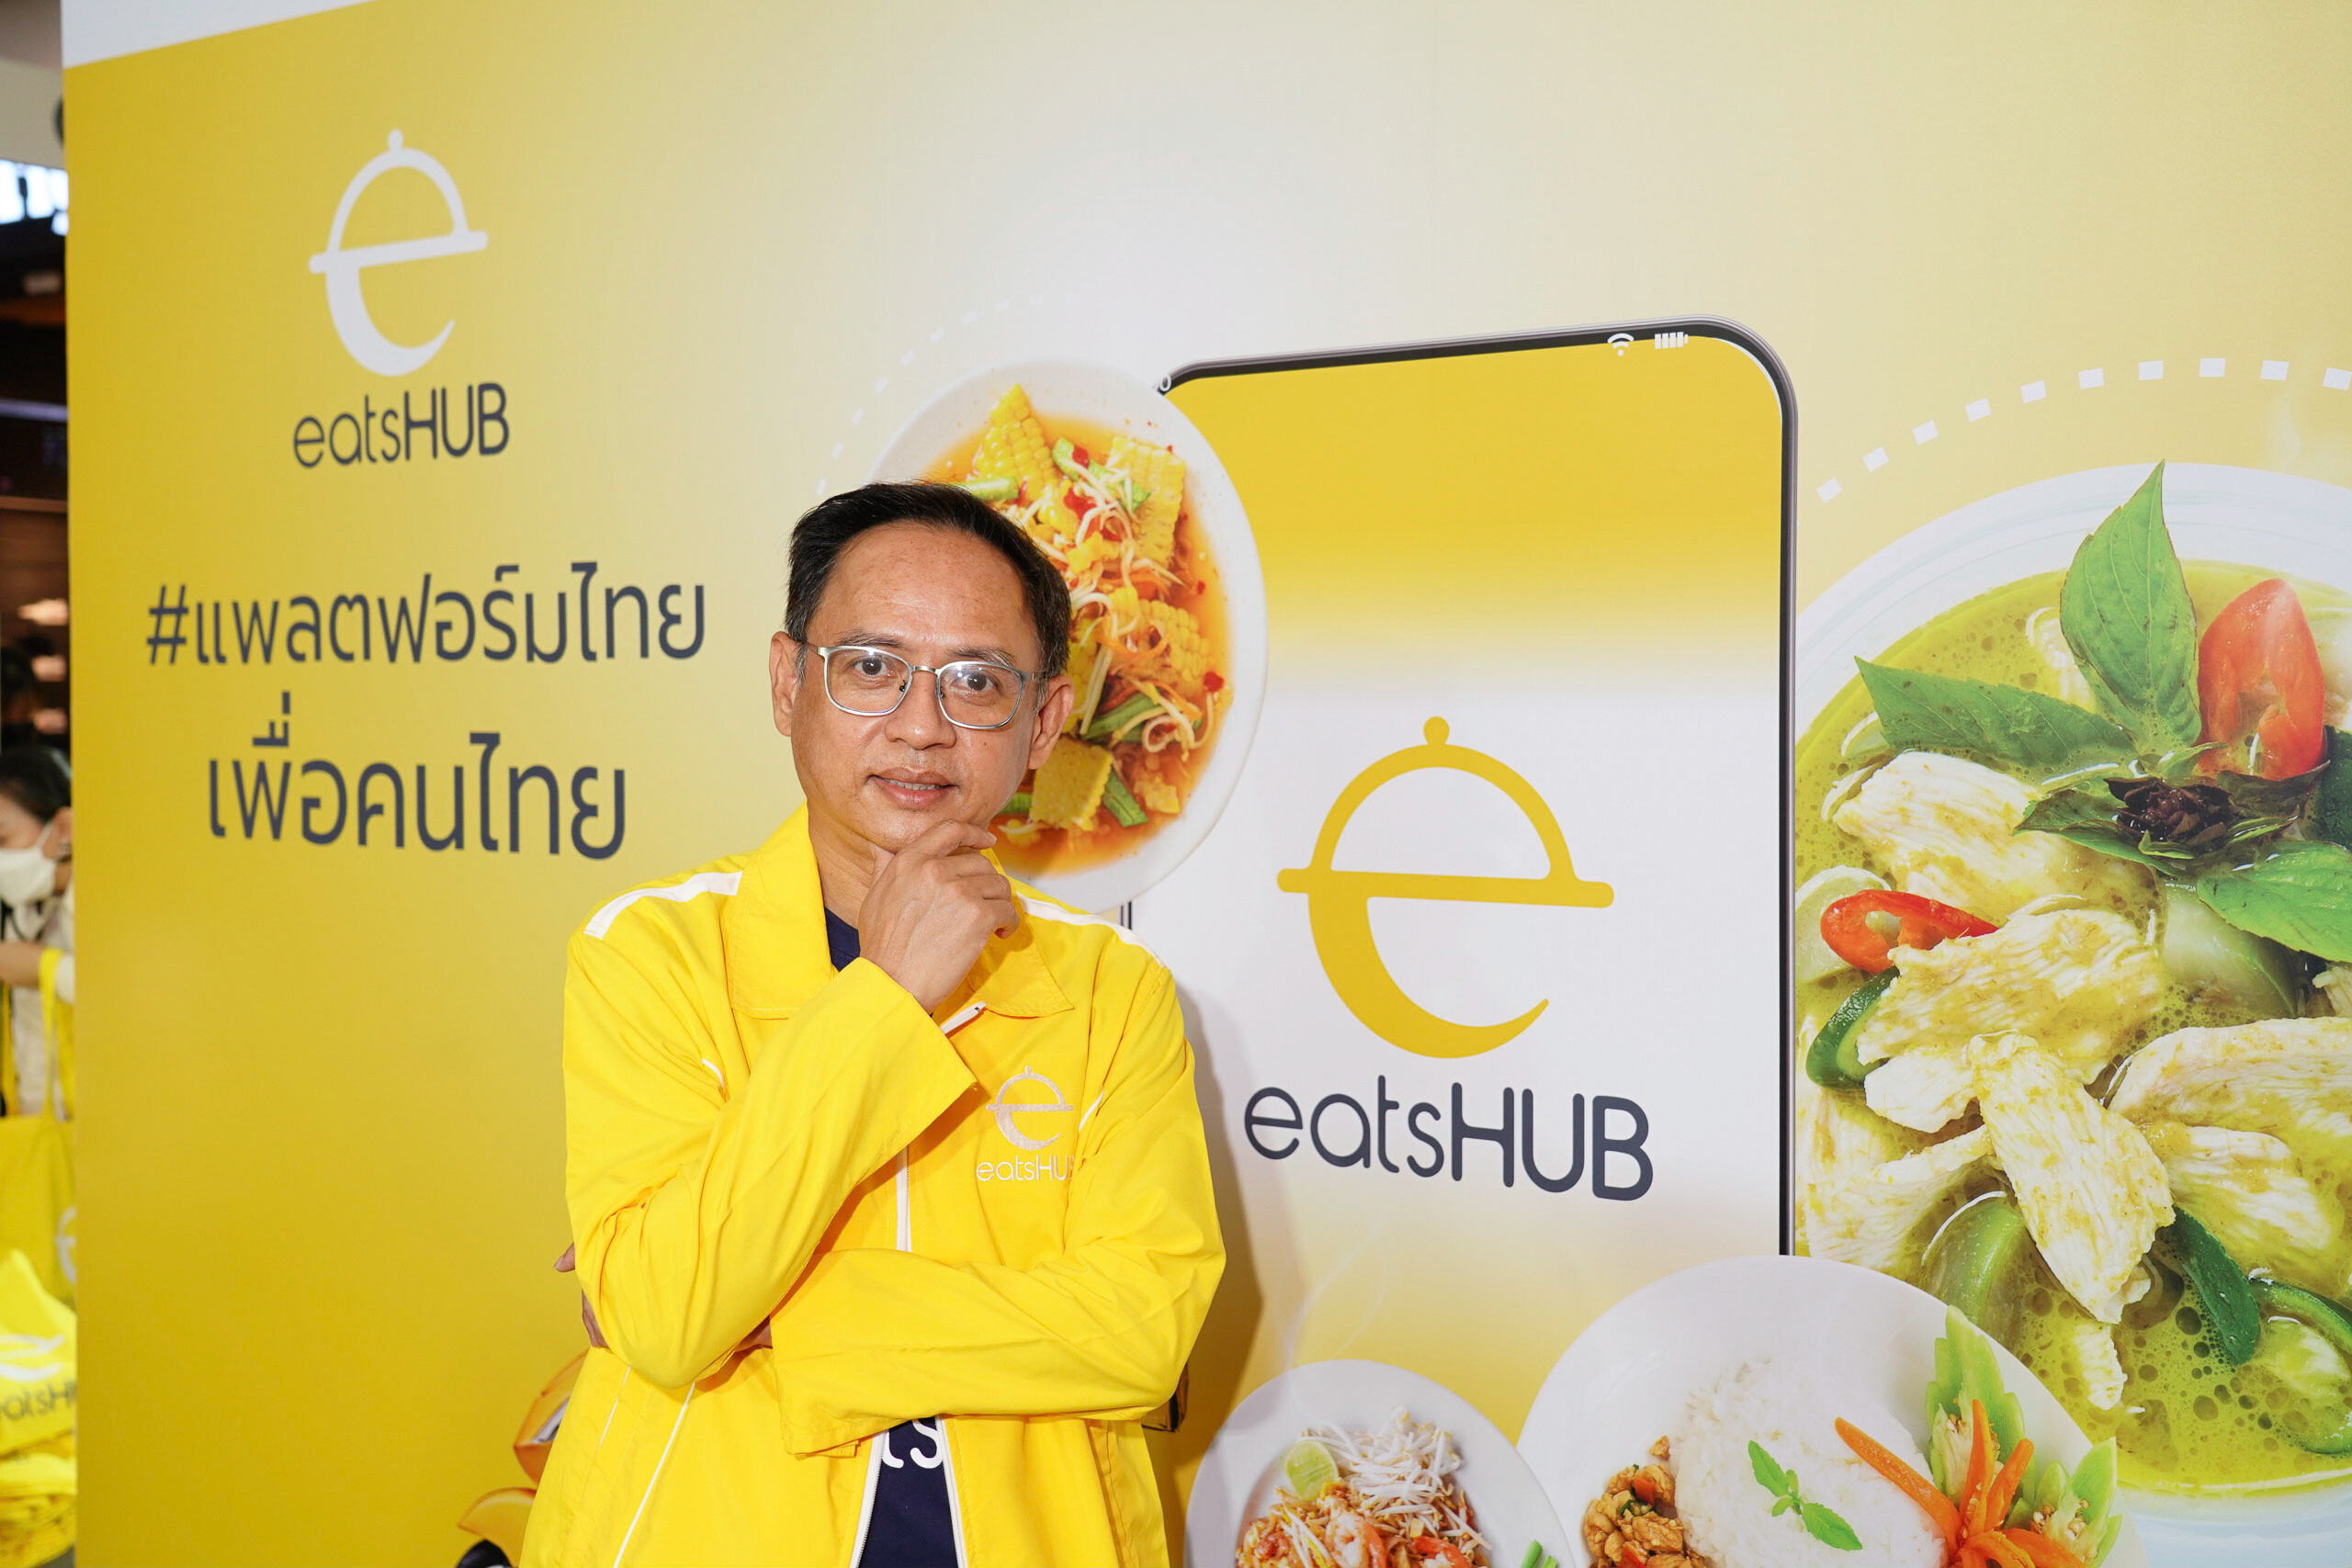 TVD ปั้นธุรกิจสตาร์ทอัพ "ฟู้ด ออเดอรี่" หนุนอีโคซิสเต็มธุรกิจอาหารไทยแกร่ง เปิดตัว "eatsHUB" แพลตฟอร์มรับ - ส่งอาหารระดับชาติ ชูค่า GP ต่ำ